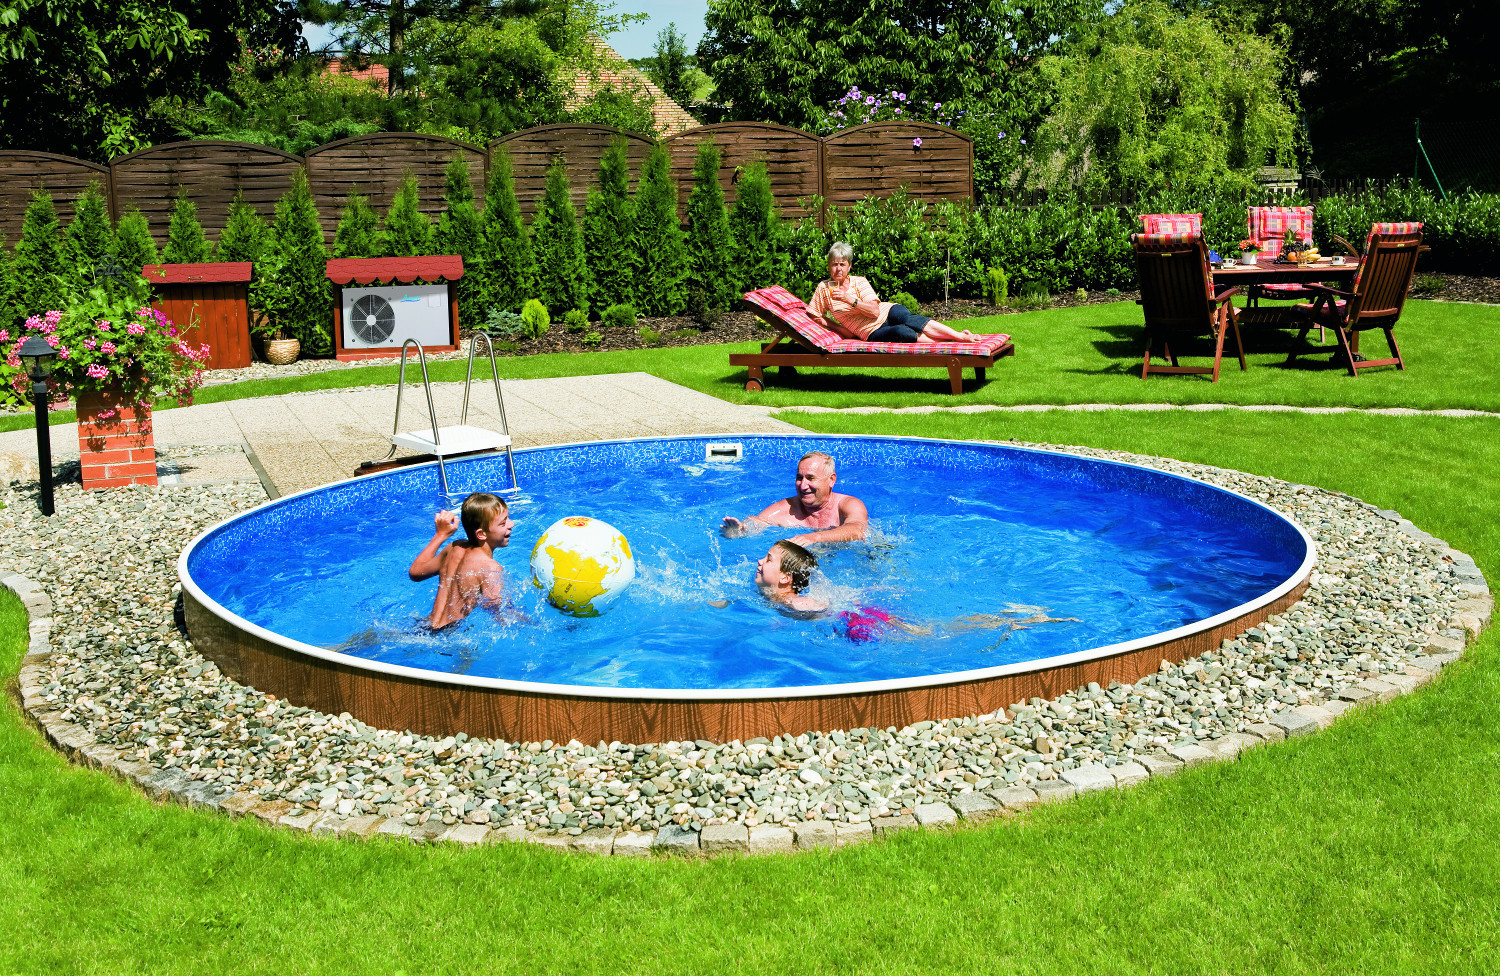 Преимущества использования каркасных бассейнов летом на дачном участке. Сборка и обслуживание каркасного бассейна